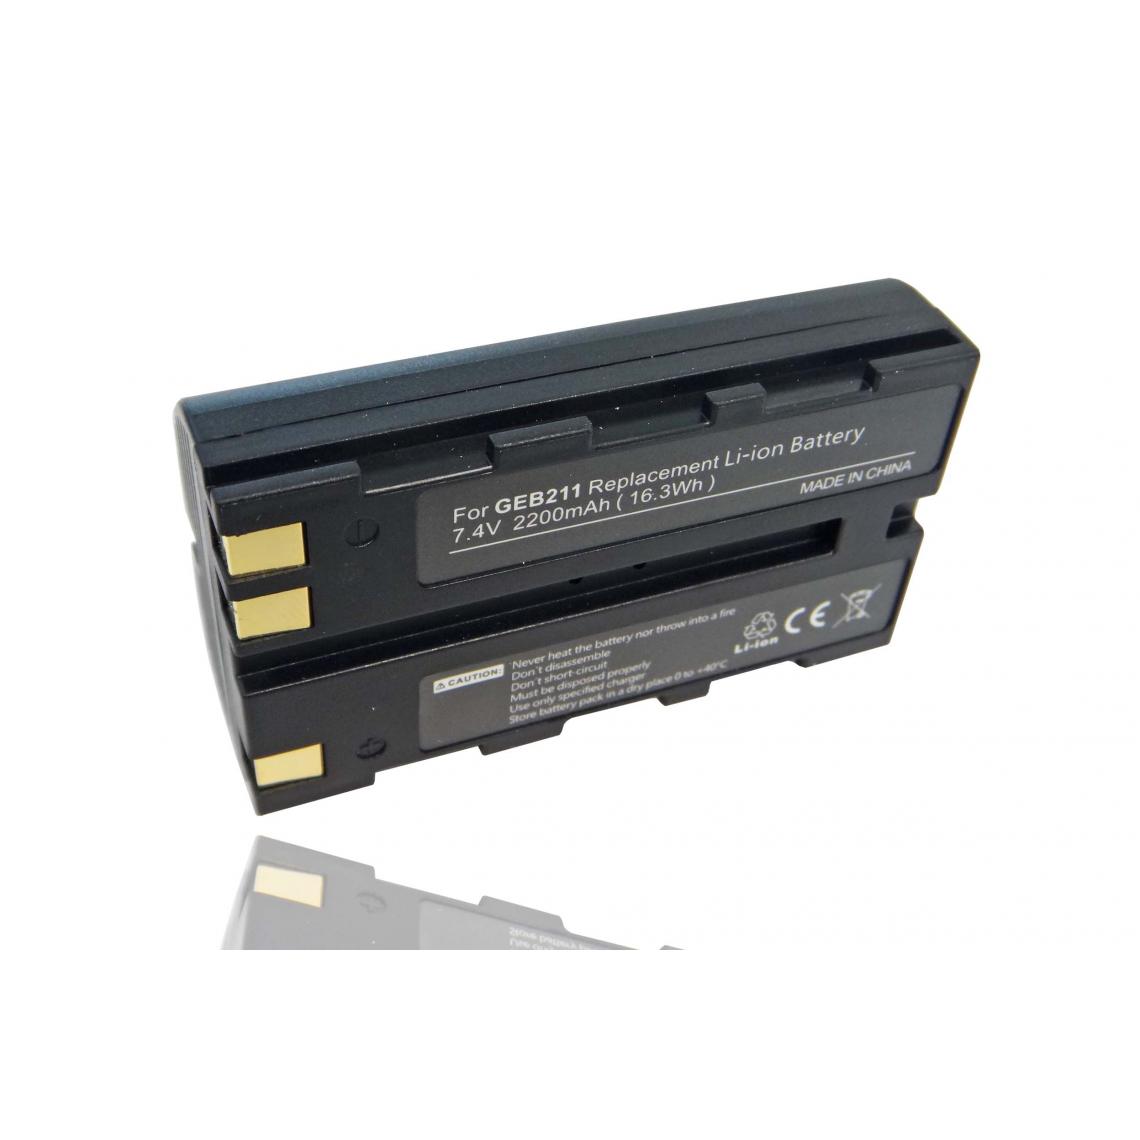 Vhbw - vhbw Batterie compatible avec Leica TS06, TS09, TS11, TS12, TS15 dispositif de mesure laser, outil de mesure (2200mAh, 7,4V, Li-ion) - Piles rechargeables